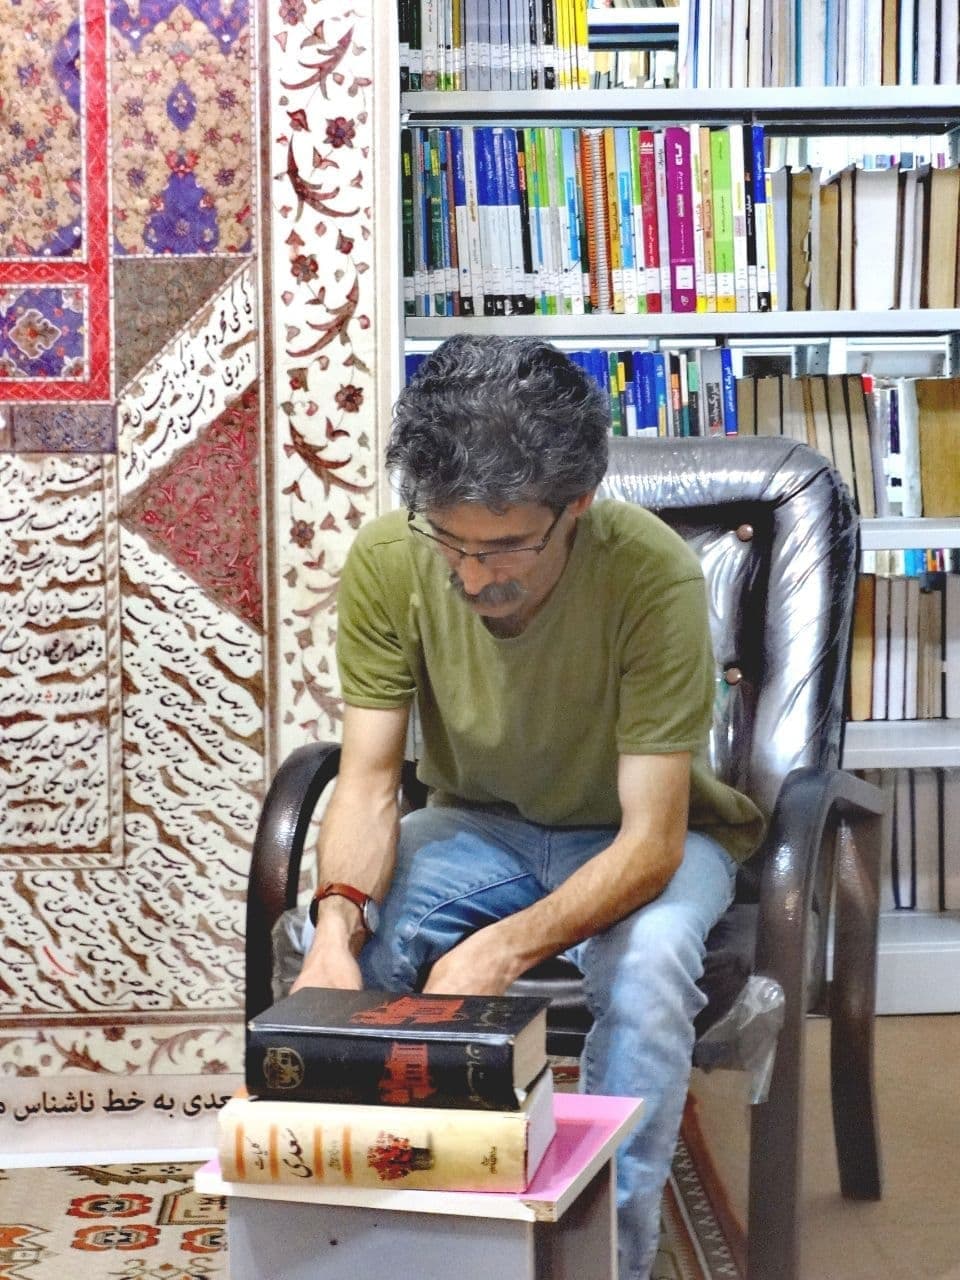 بهمن صباغ زاده کتابخانه شهید بهشتی